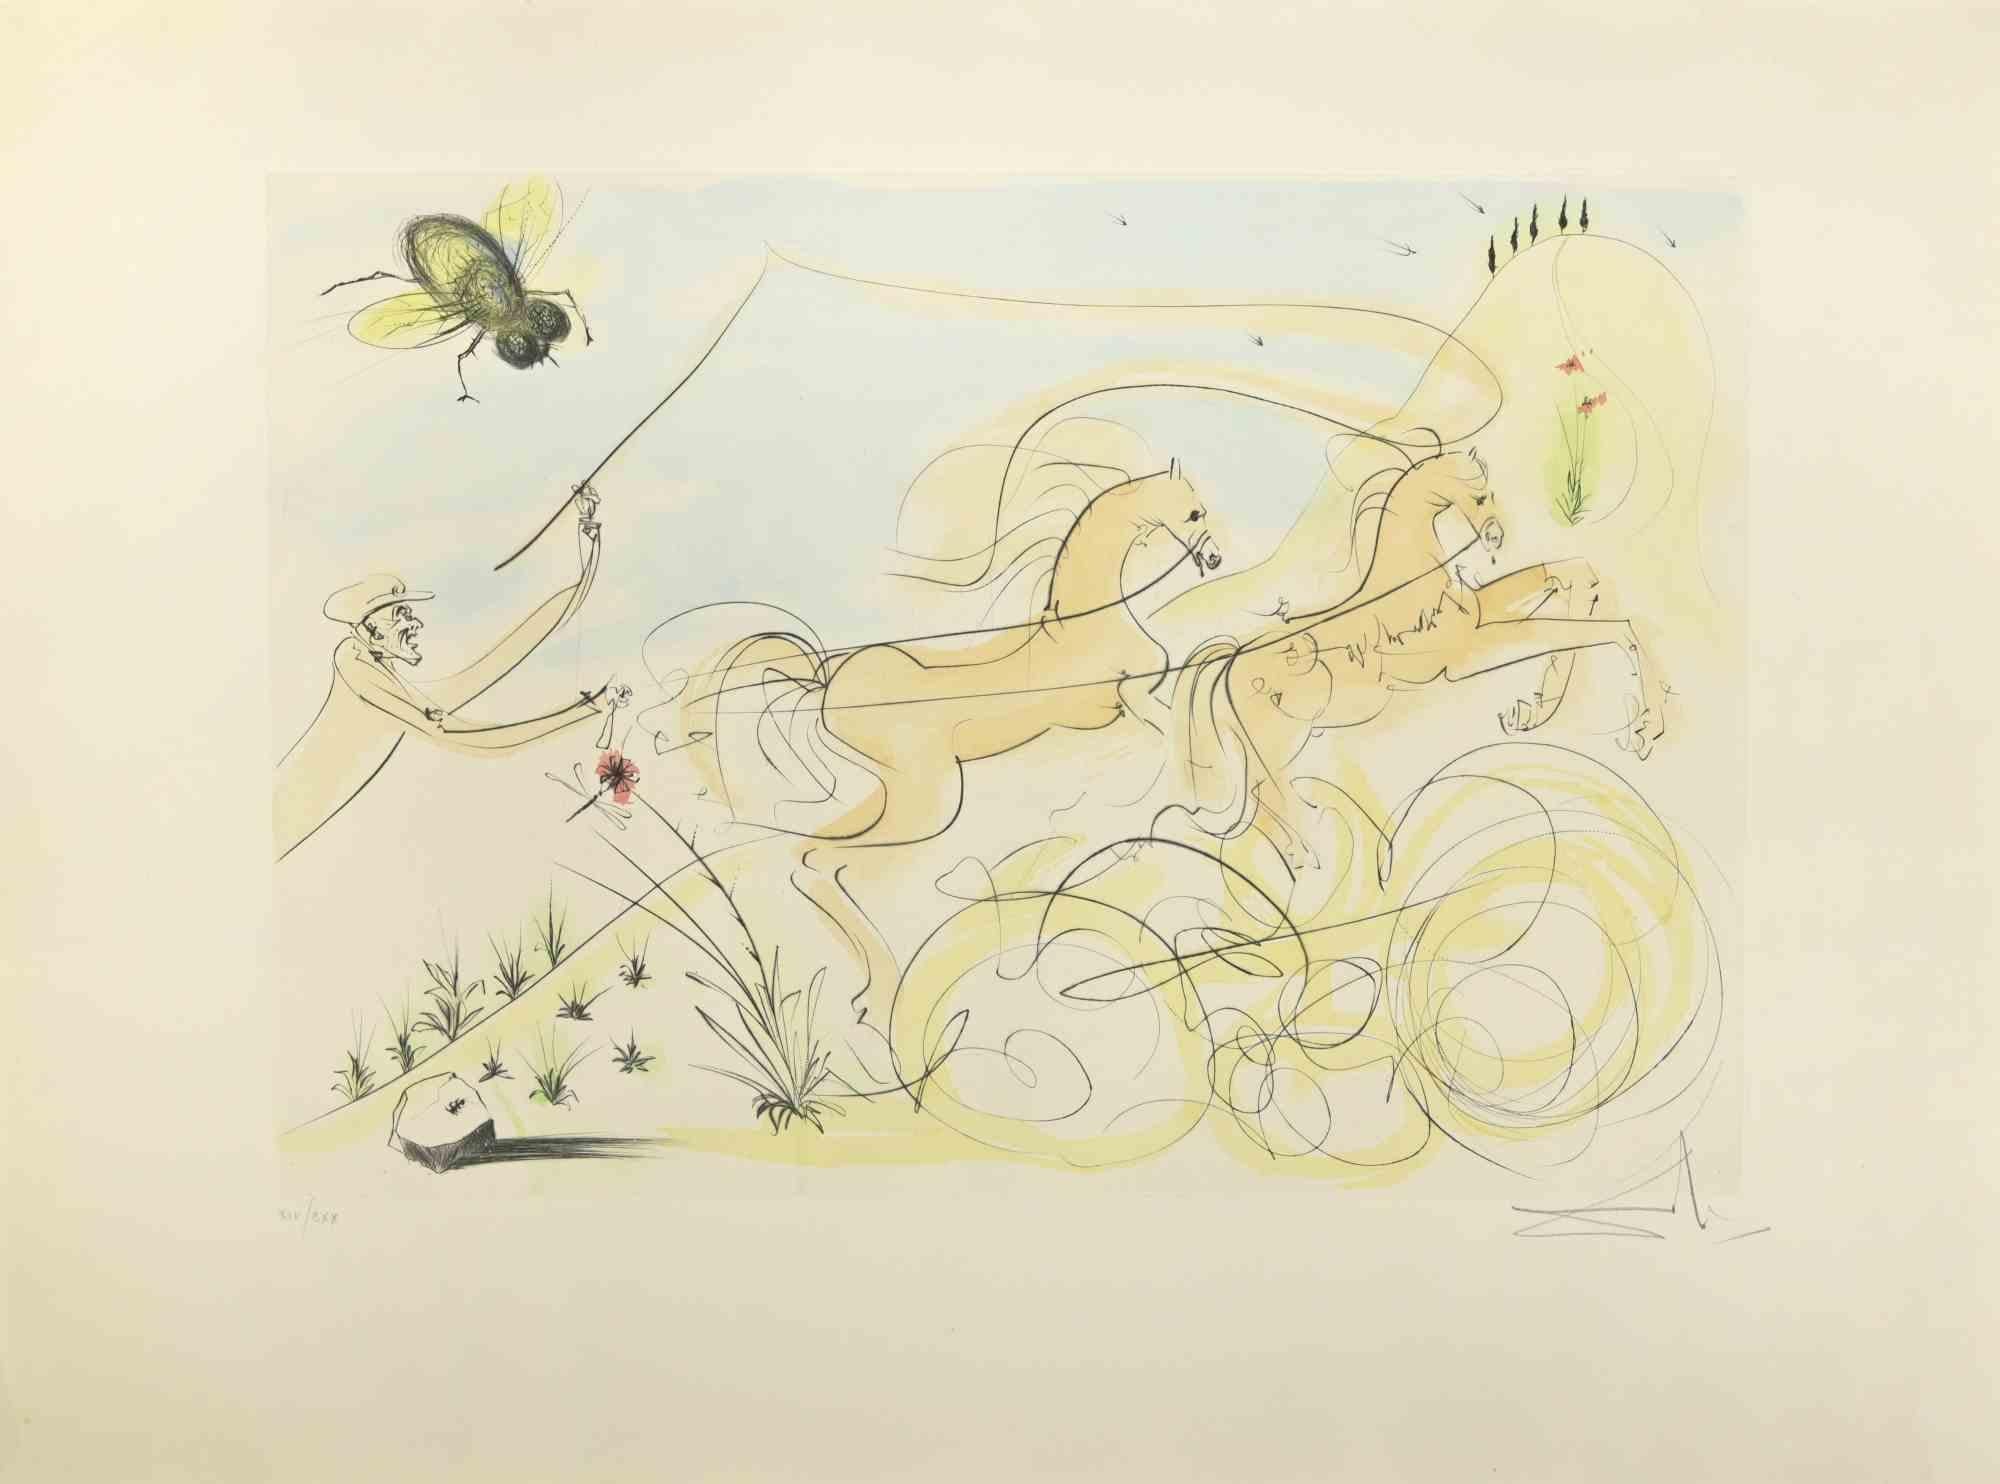 Salvador Dalí Animal Print – The Coach und die Fliesen – Radierung  - 1974